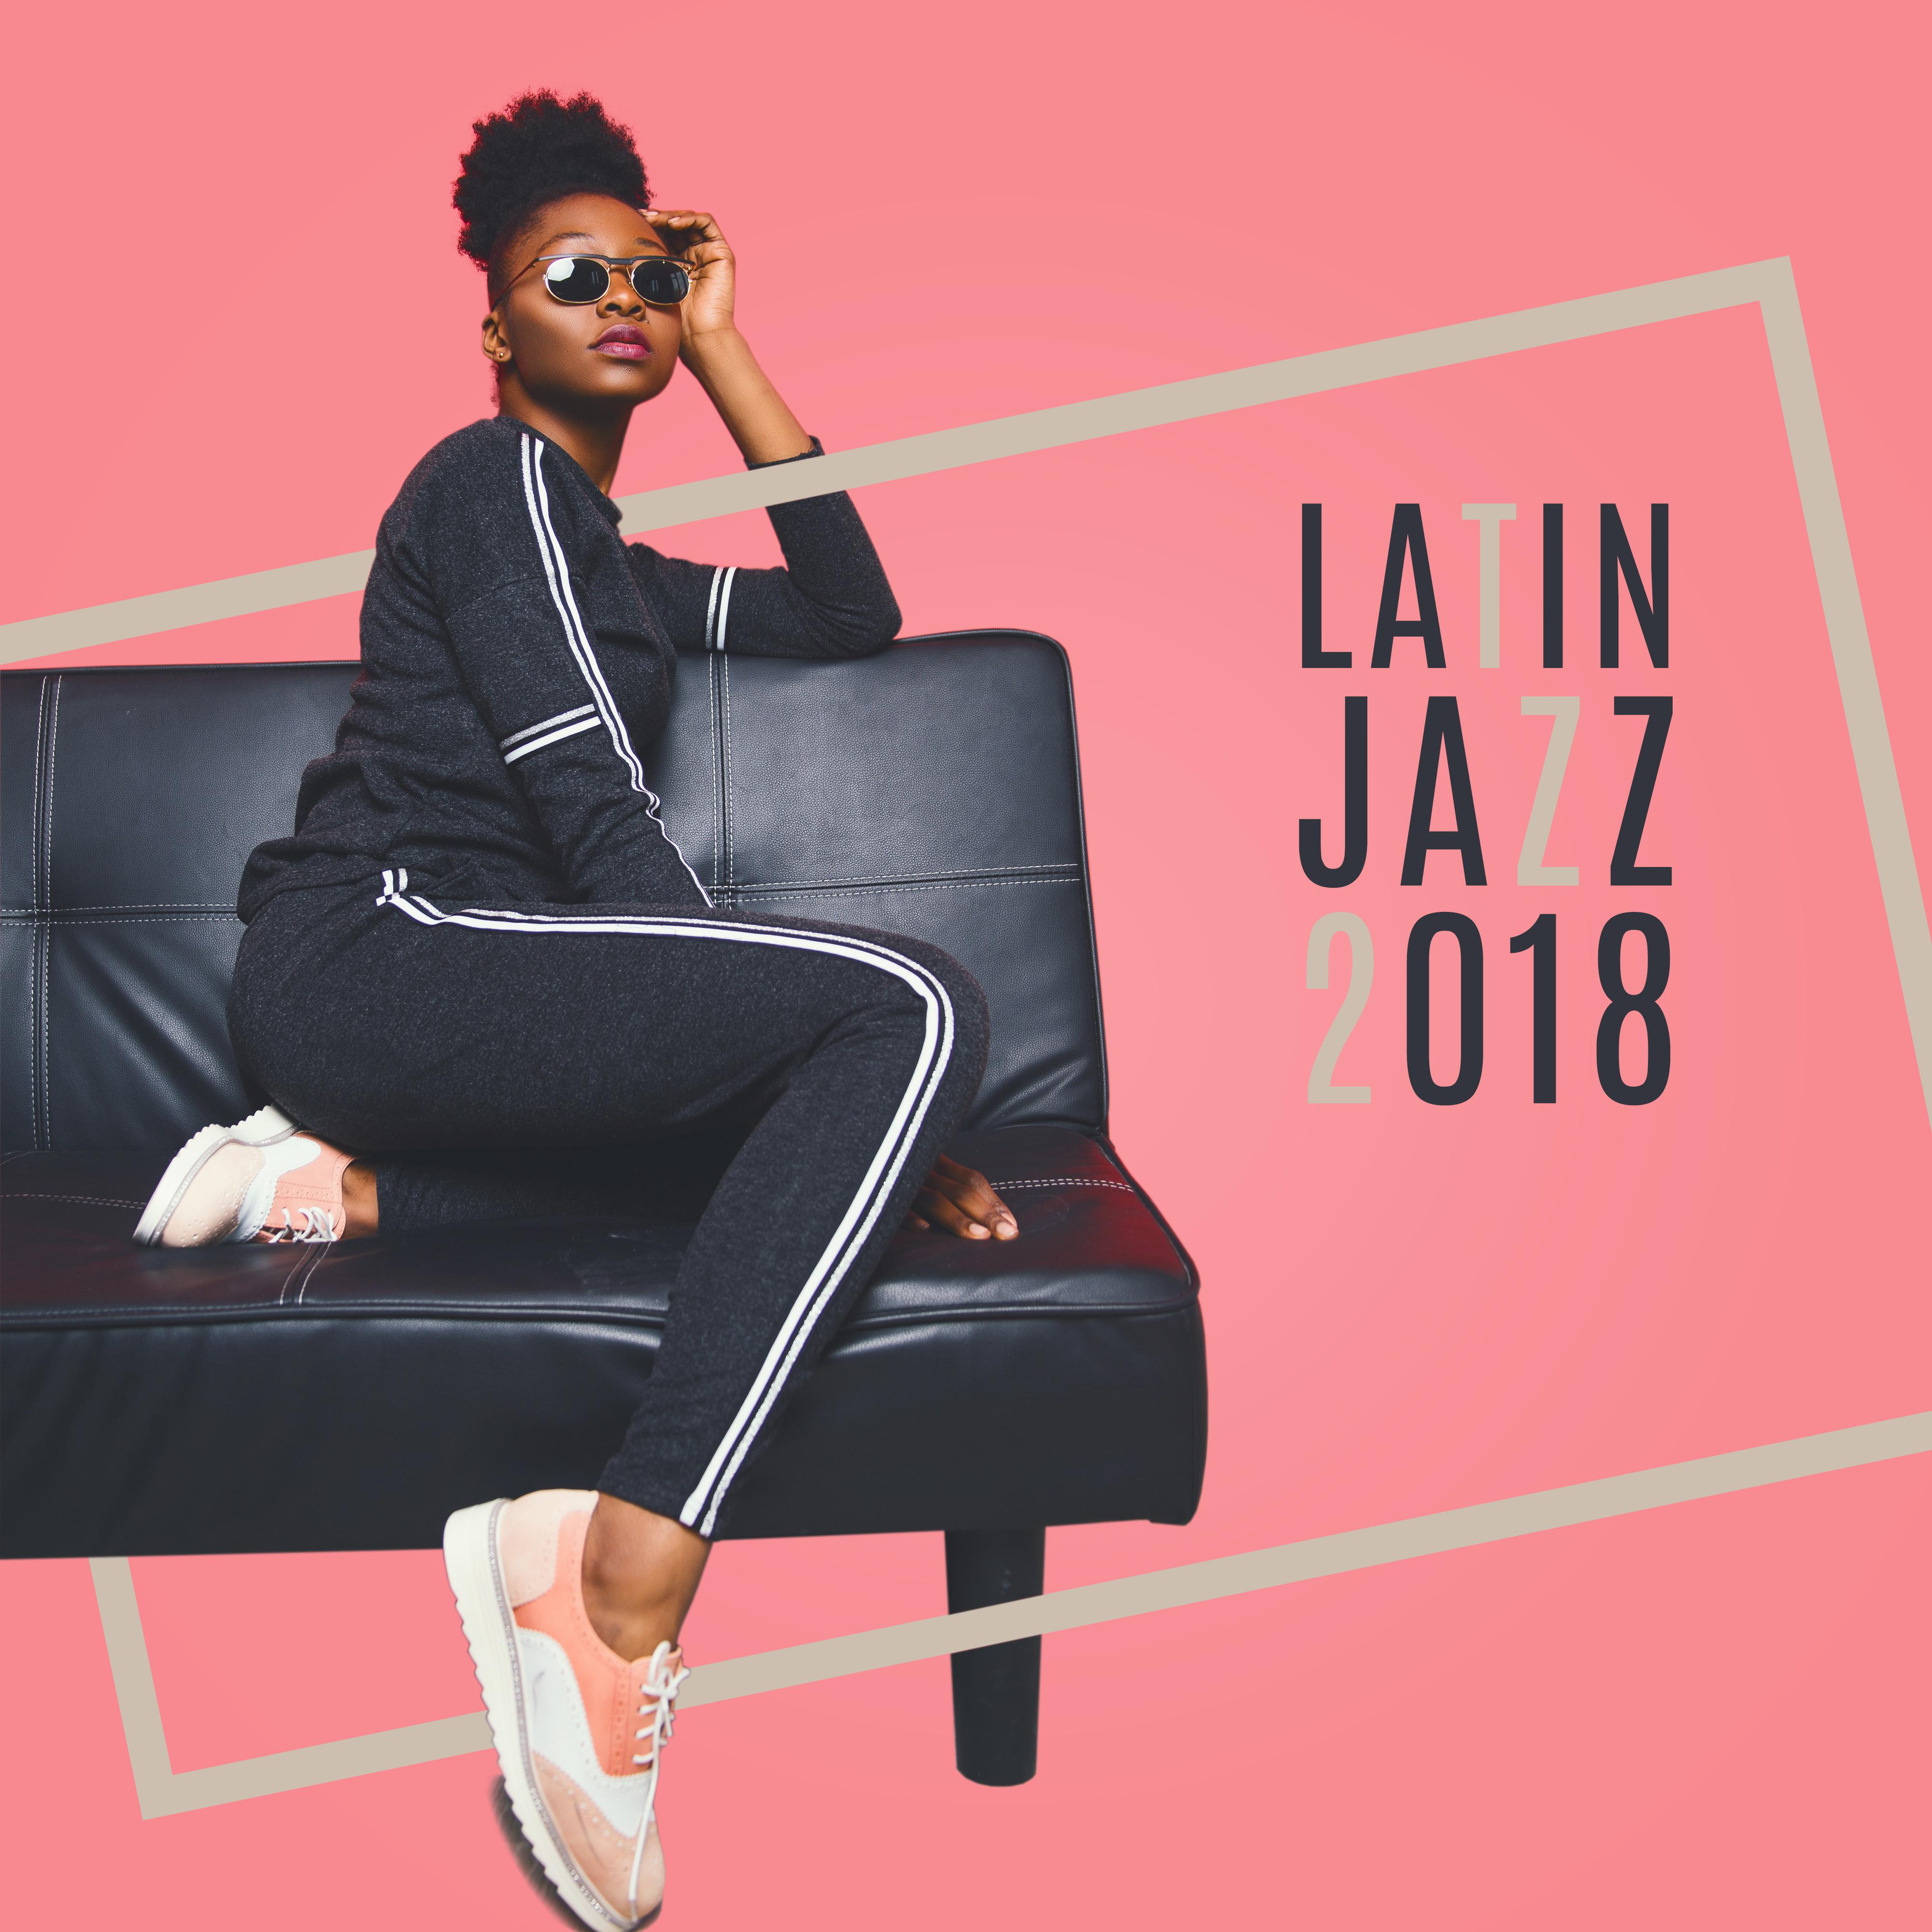 Latin Jazz 2018